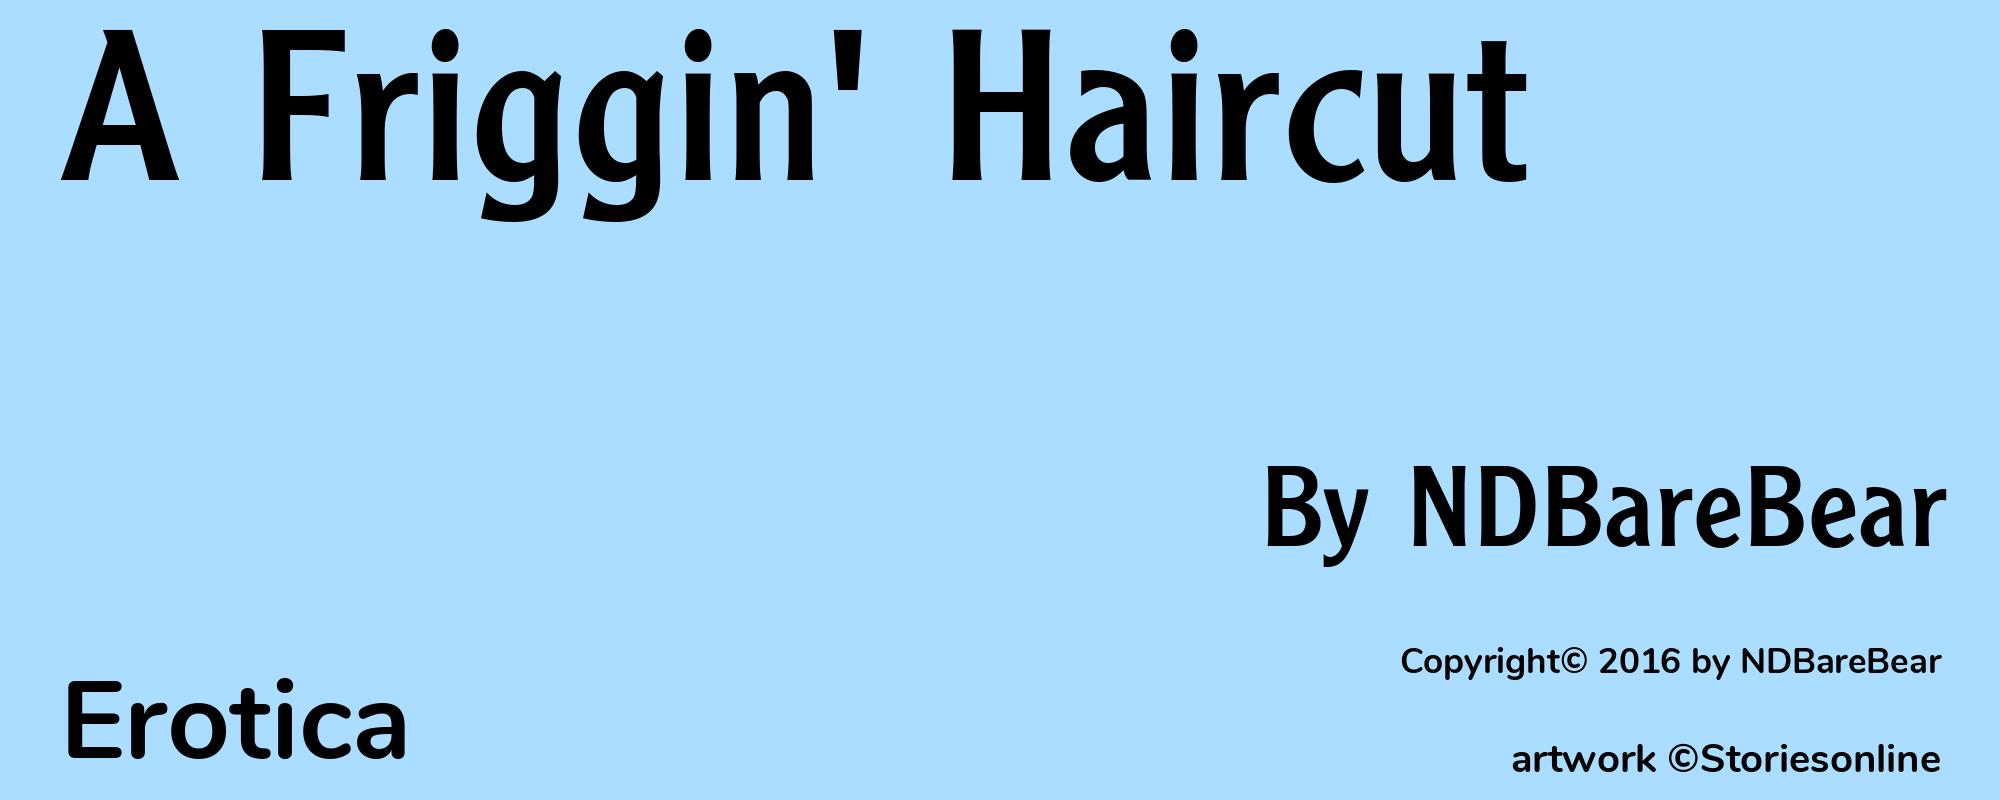 A Friggin' Haircut - Cover